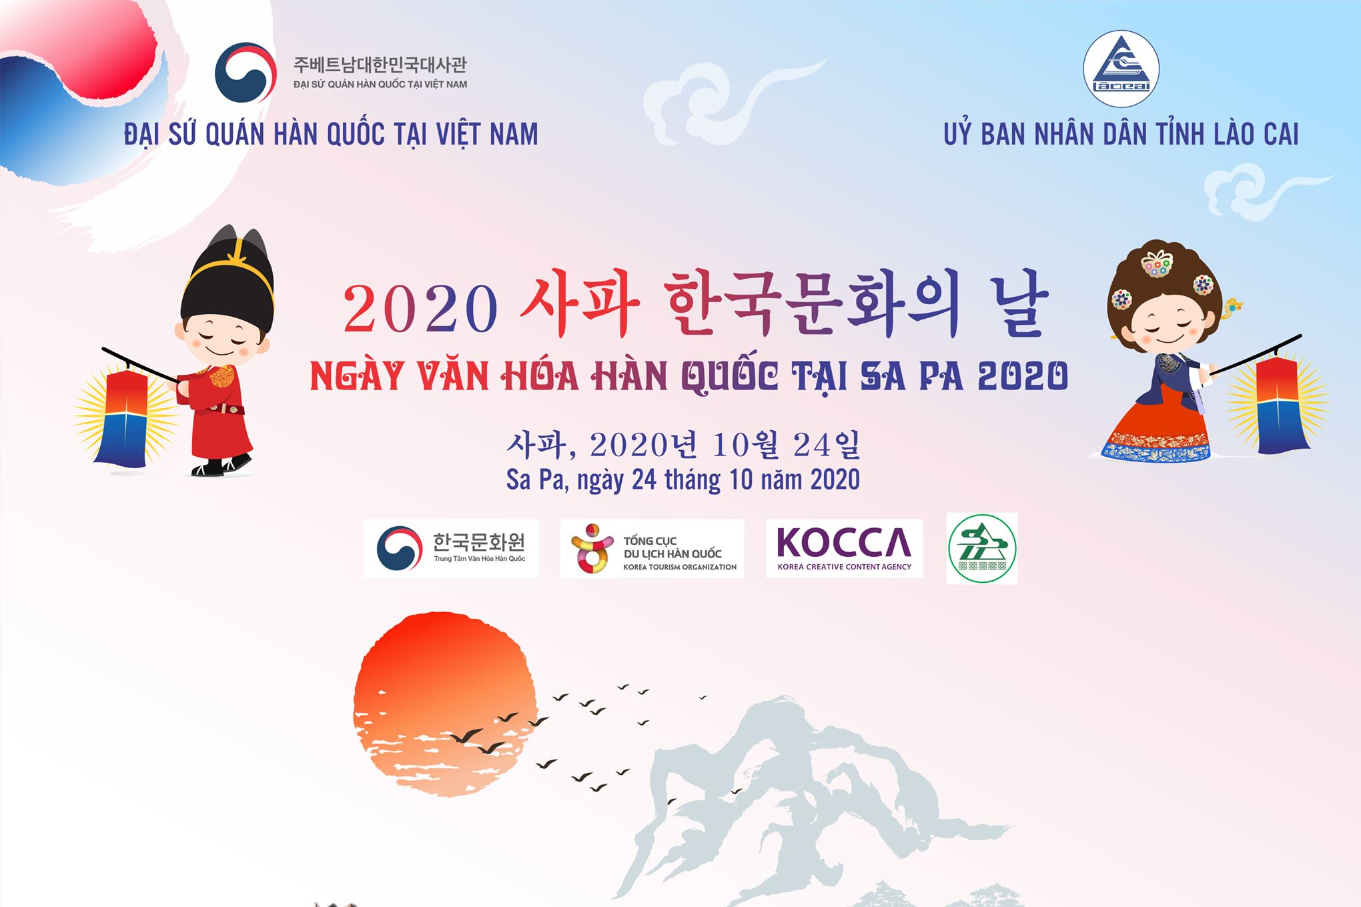 Ngày hội văn hóa Hàn Quốc và Du lịch Lào Cai tại Sa Pa năm 2020